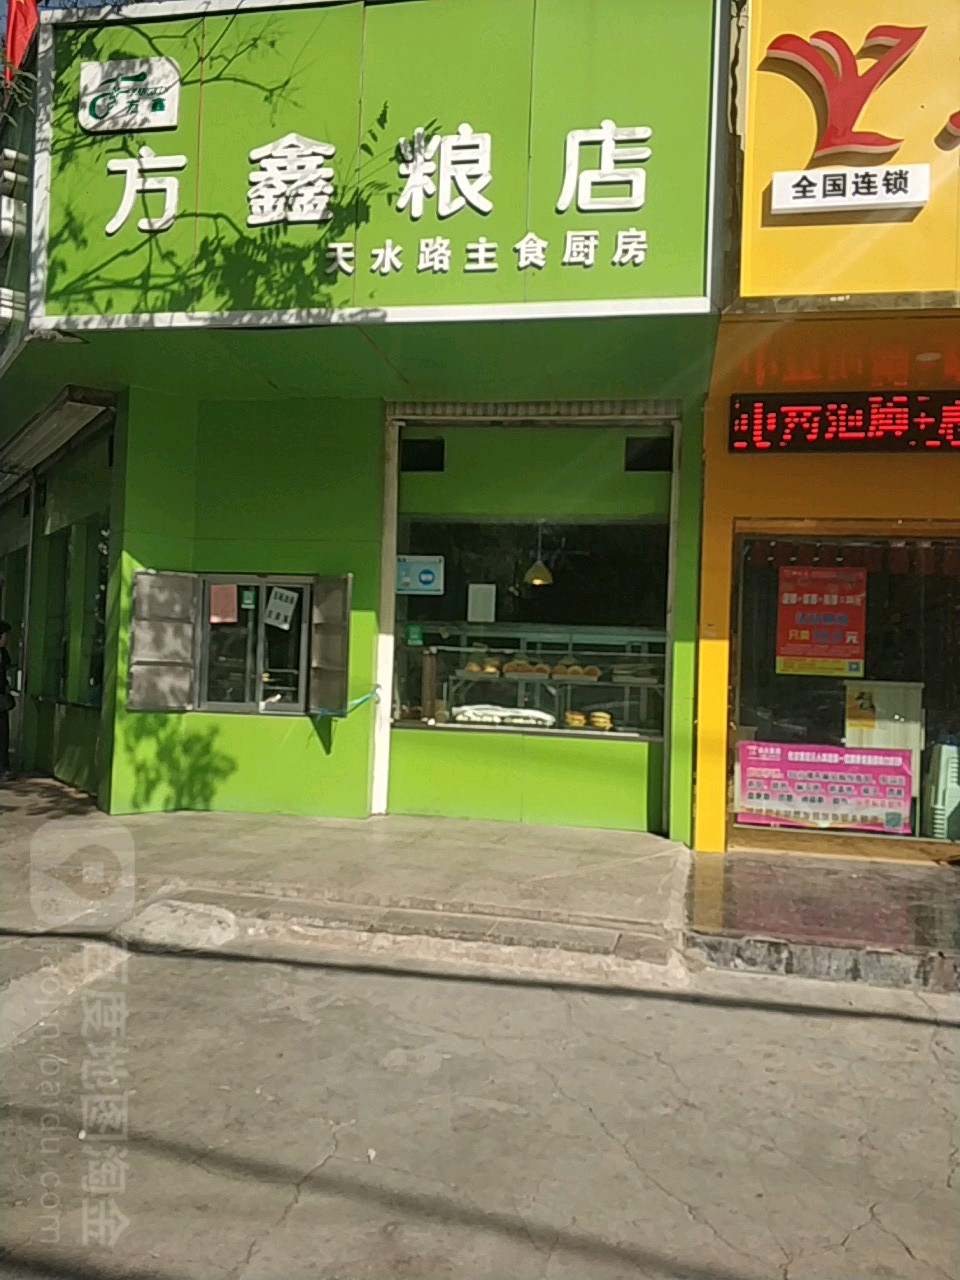 方鑫糧店天水路店